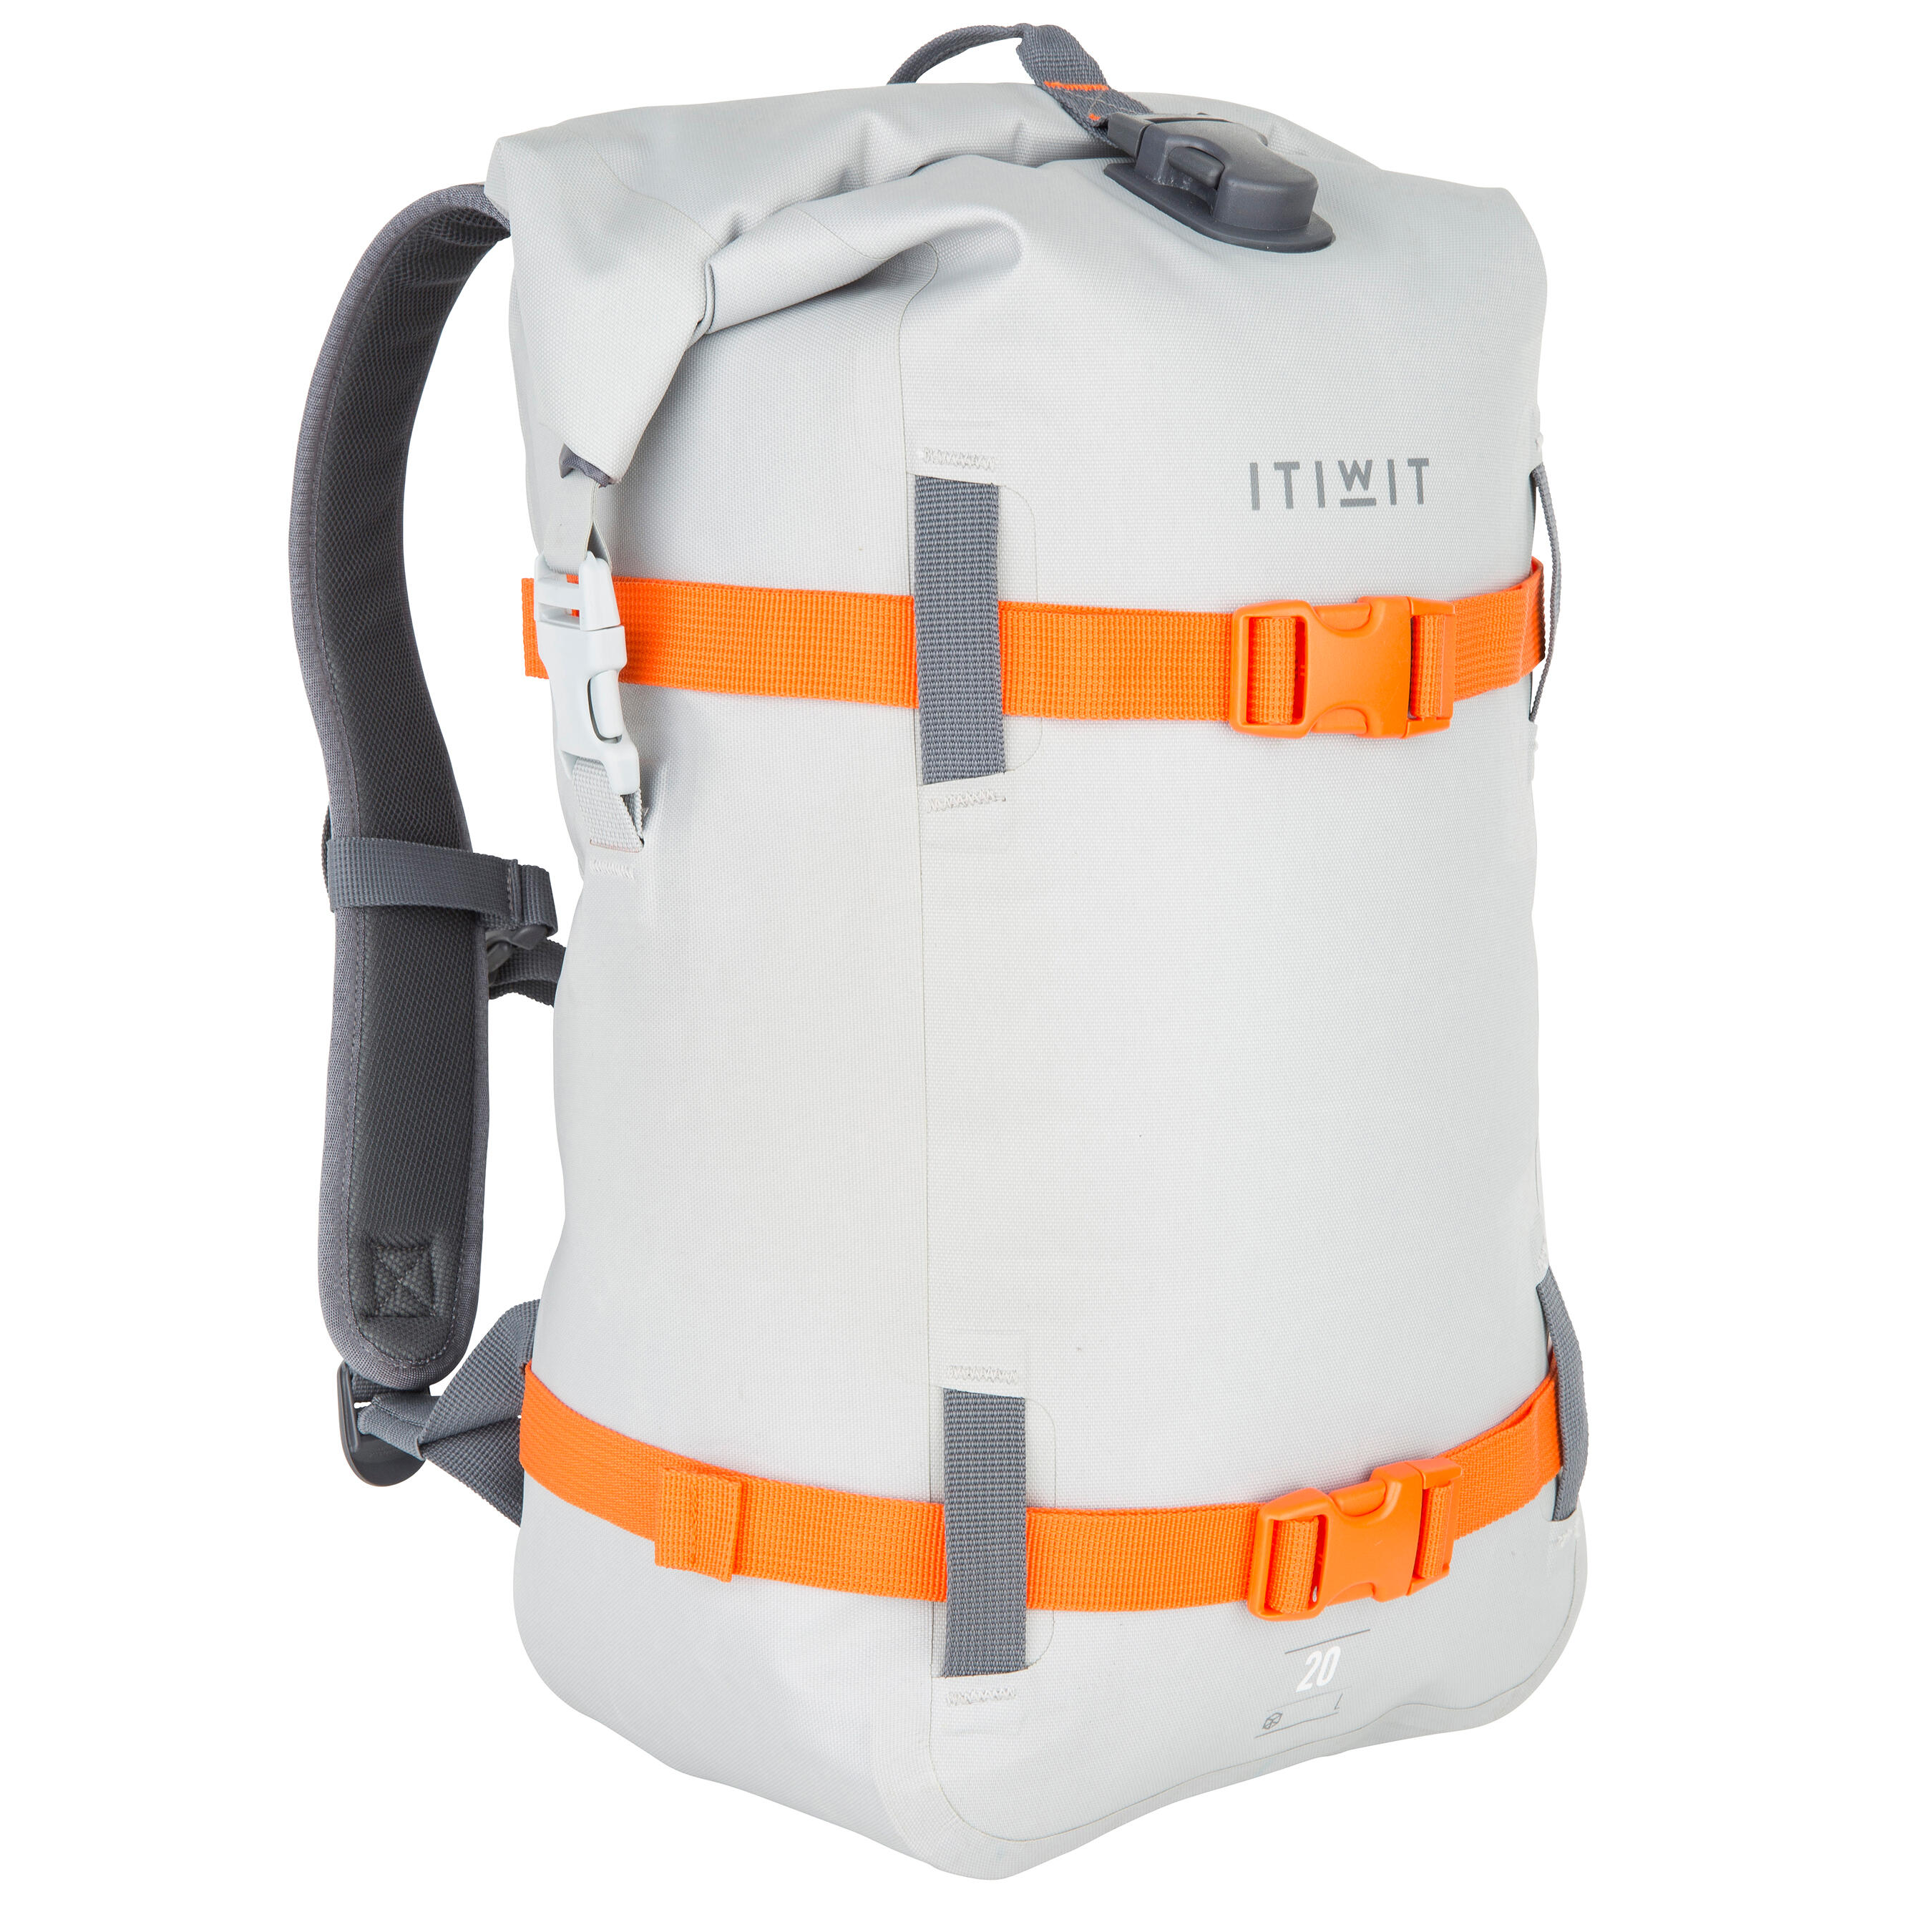 ITIWIT Waterproof Backpack 20L - Grey